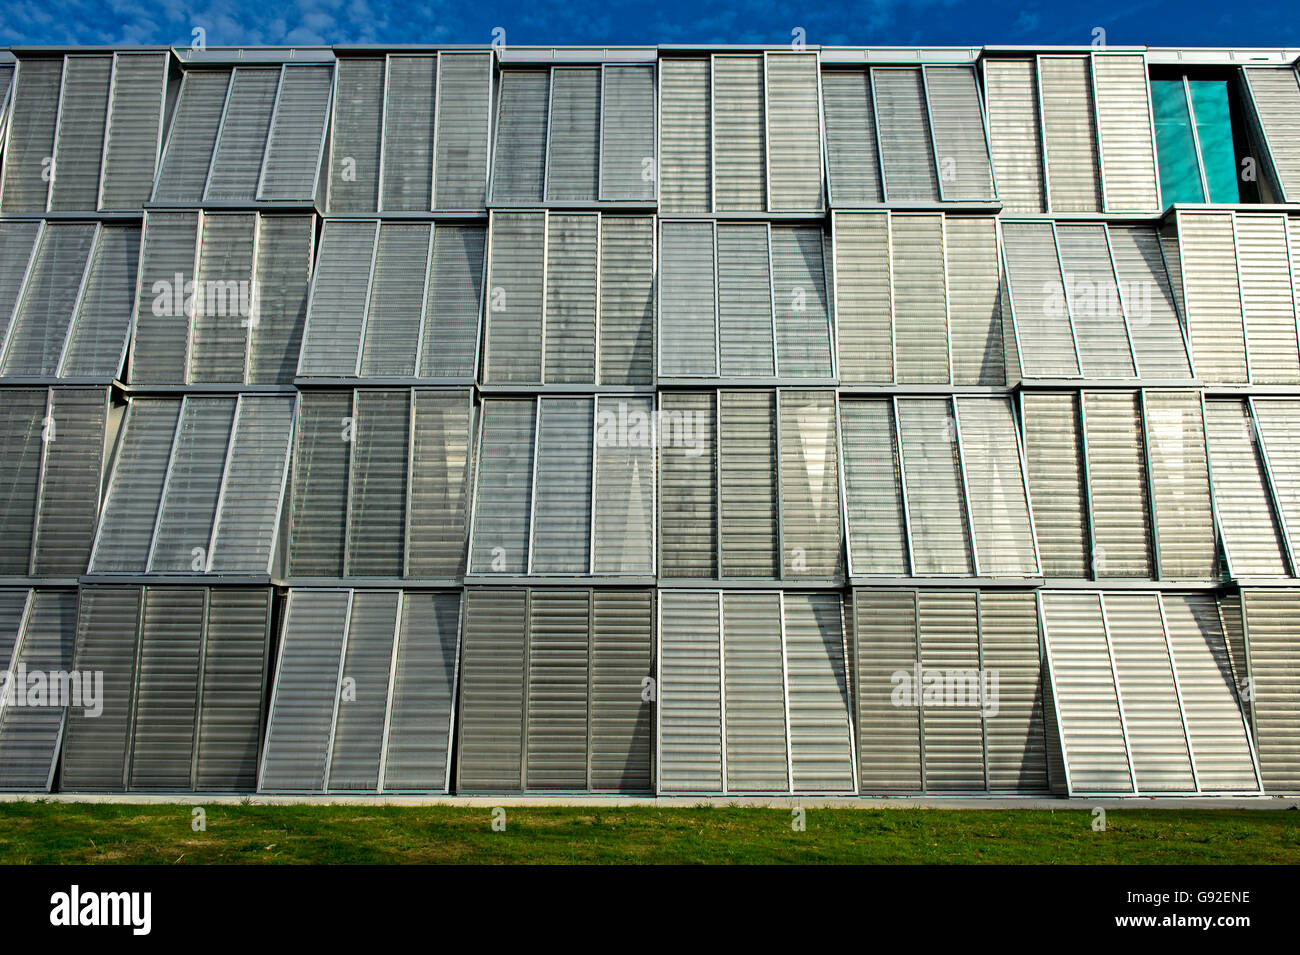 Platten aus Aluminium mesh als Fassade des Gebäudes ME, École Polytechnique  Fédérale de Lausanne, EPFL, Switzerland Stockfotografie - Alamy